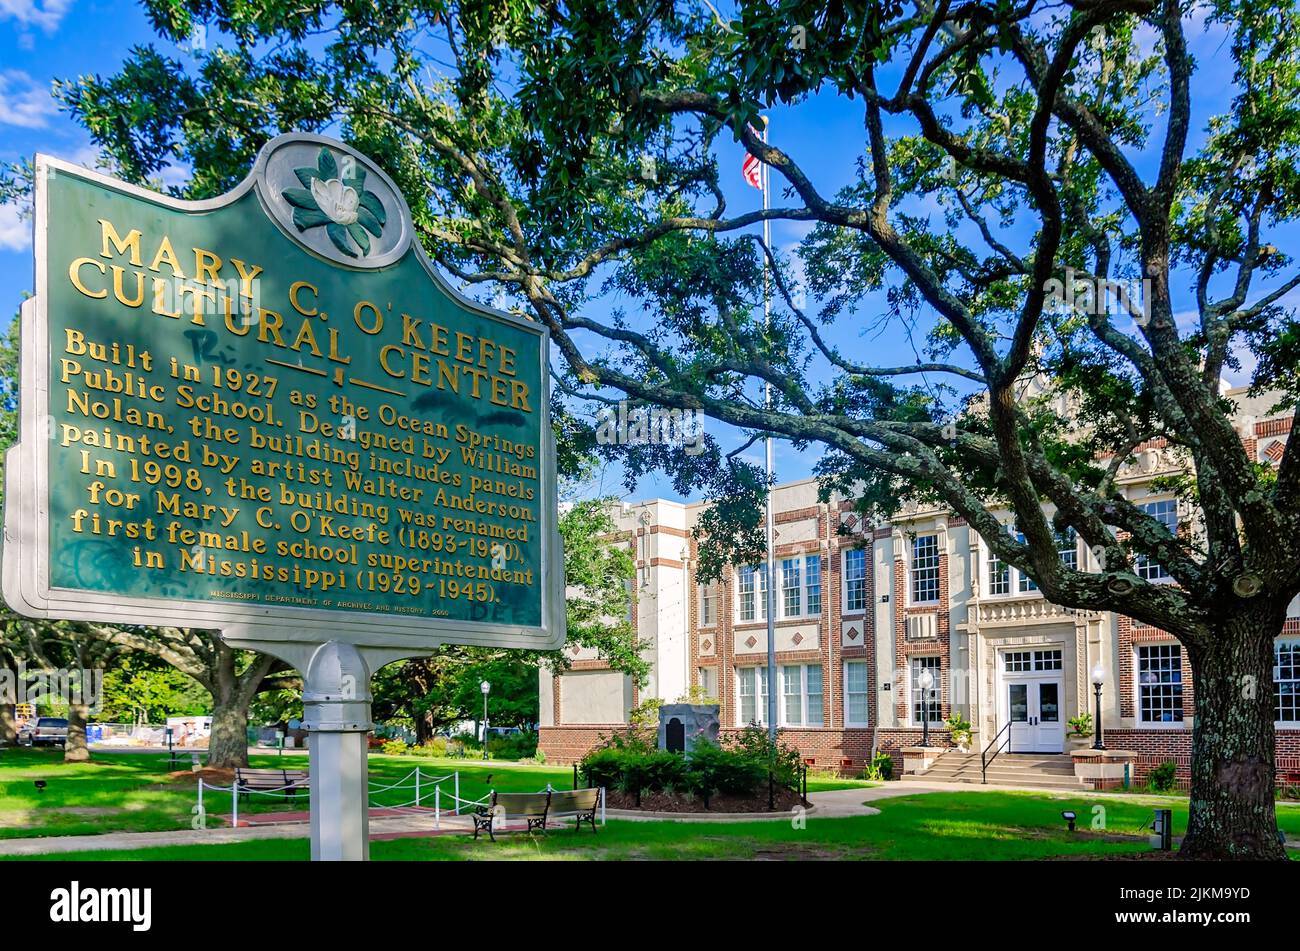 Un marcador histórico se encuentra frente al Centro de Artes Culturales Mary C. O’Keefe, el 31 de julio de 2022, en Ocean Springs, Mississippi. Foto de stock